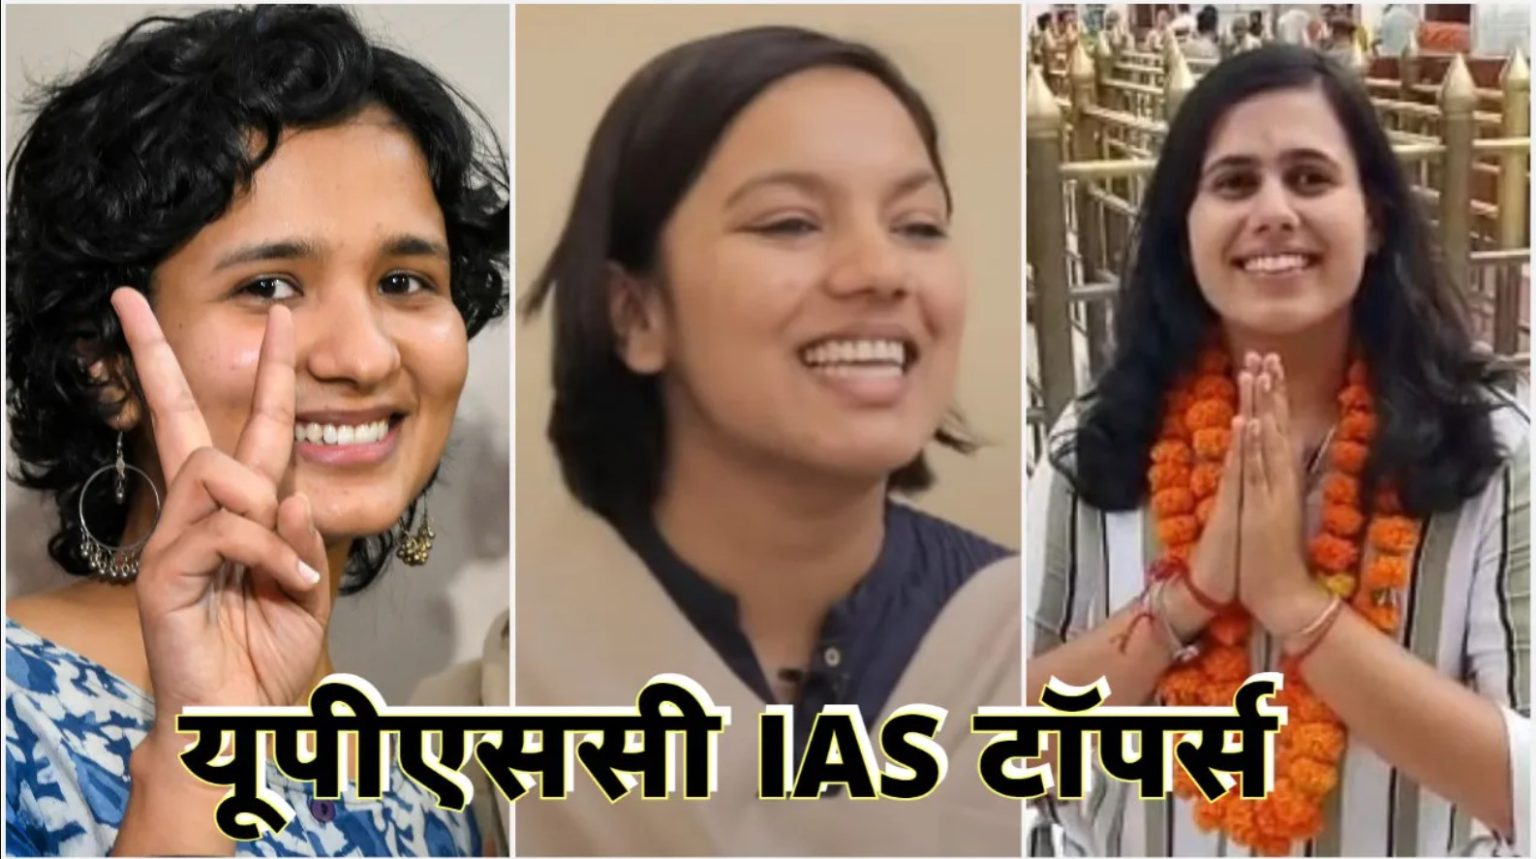 भारत गौरव – सिविल सेवा परीक्षा में पहले तीन स्थानों पर लड़कियां